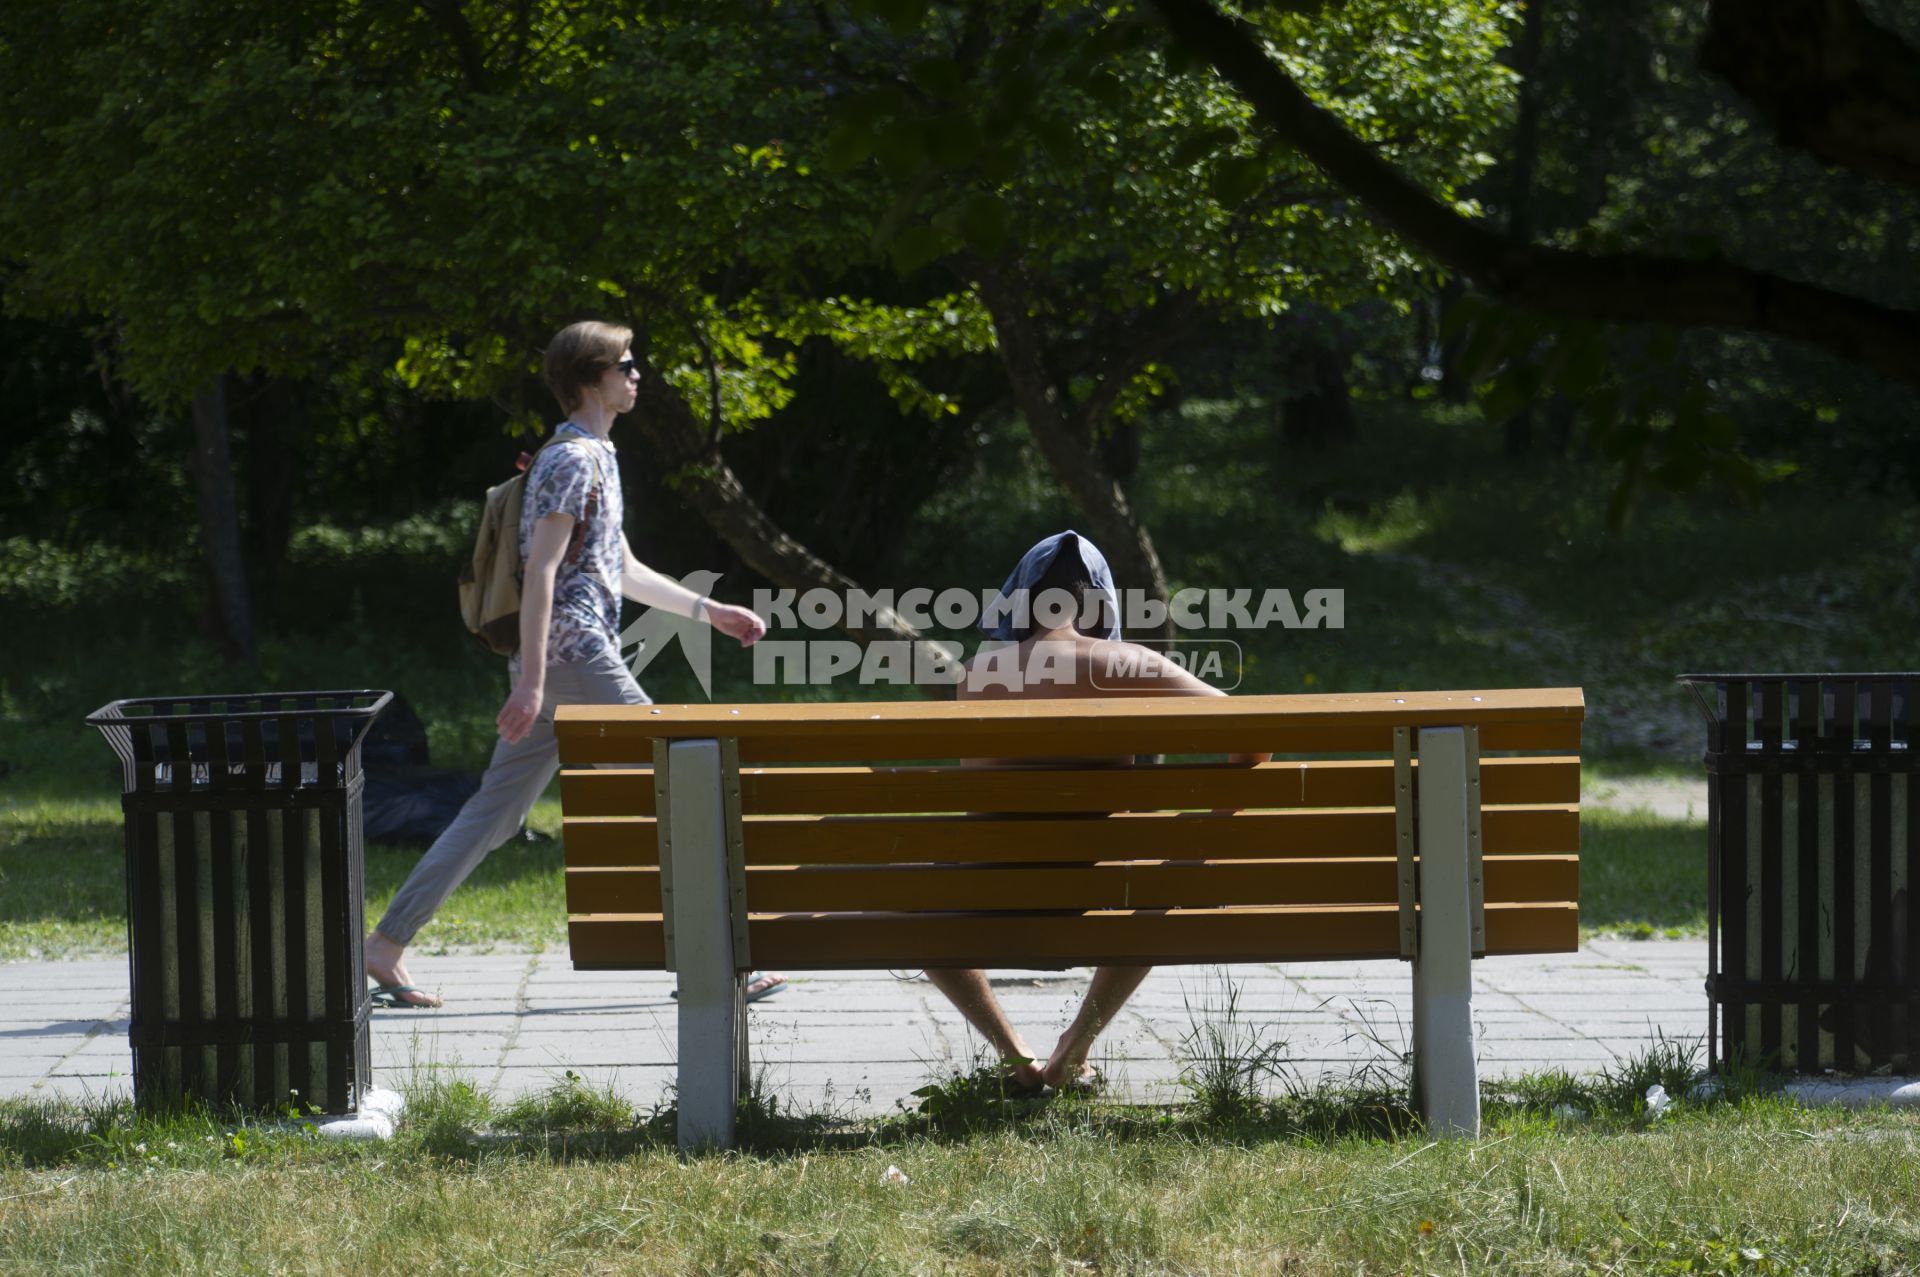 Екатеринбург. Мужчина загарает на скамейке в парке, во время ослабления режима самоизоляции, введеного для нераспространения новой коронавирусной инфекции COVID-19